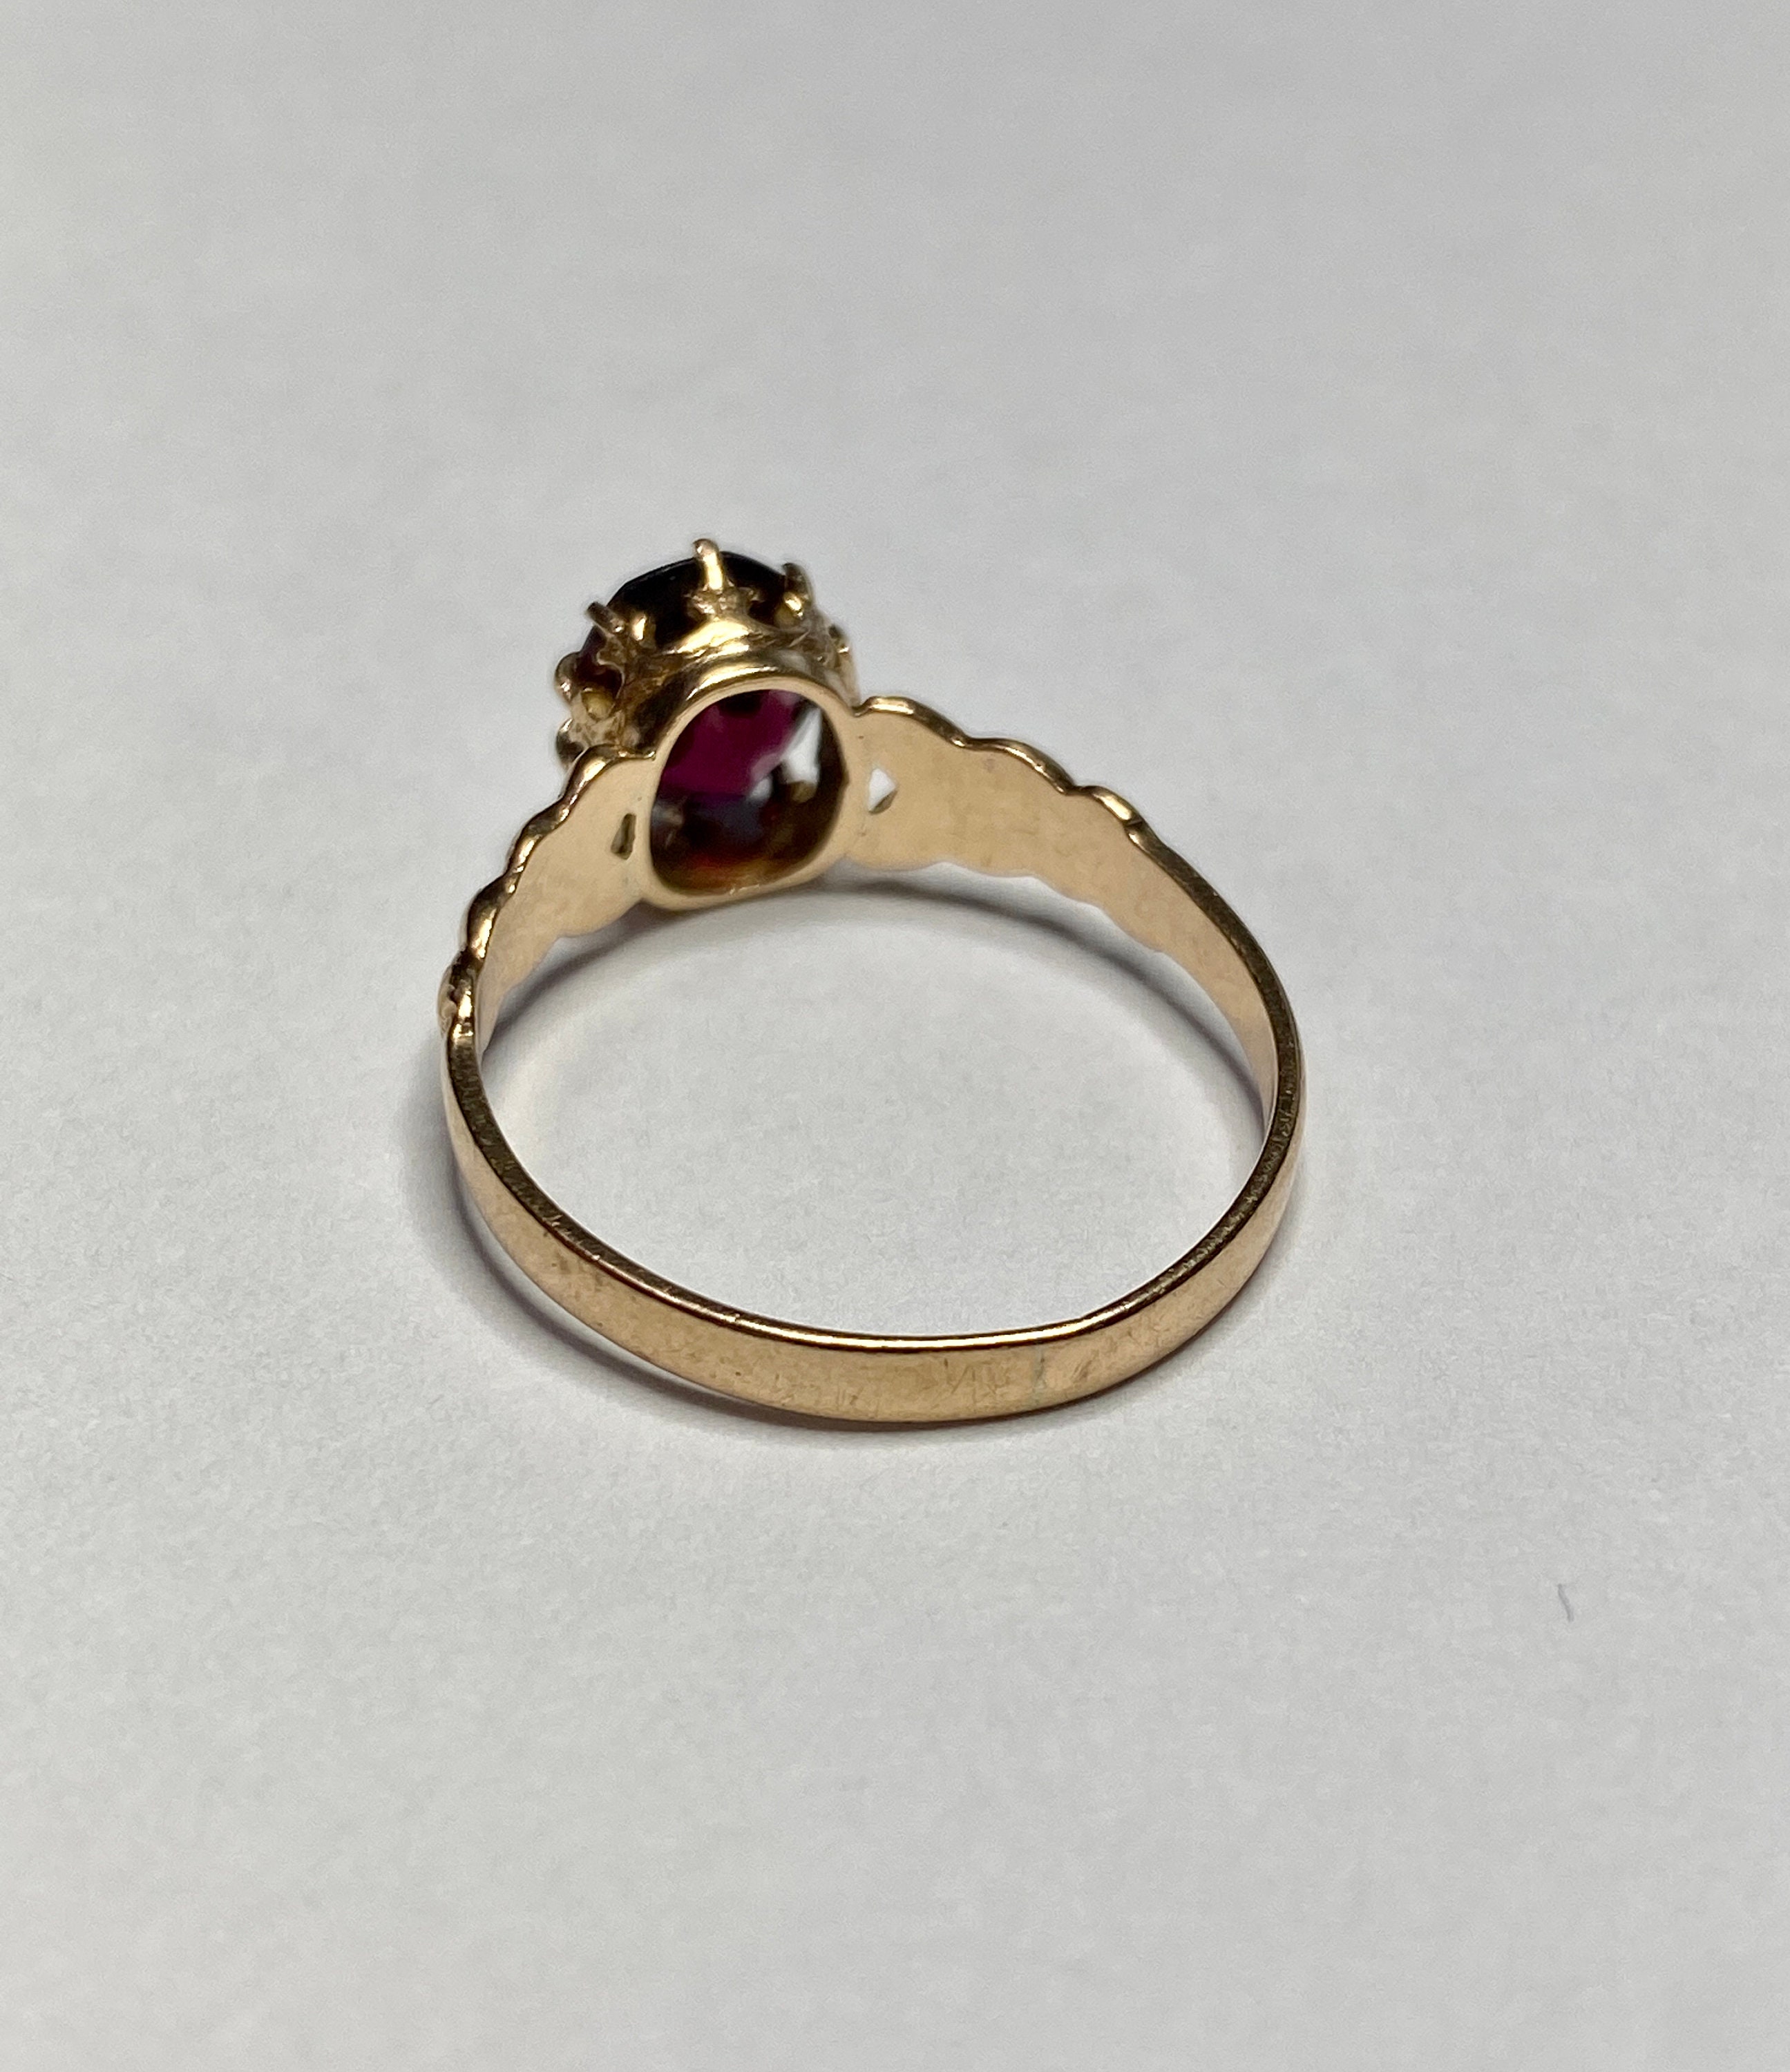 Rhodolite Garnet Ring Antique 14k Rosey Gold Genuine 1.21 CT - Etsy Denmark